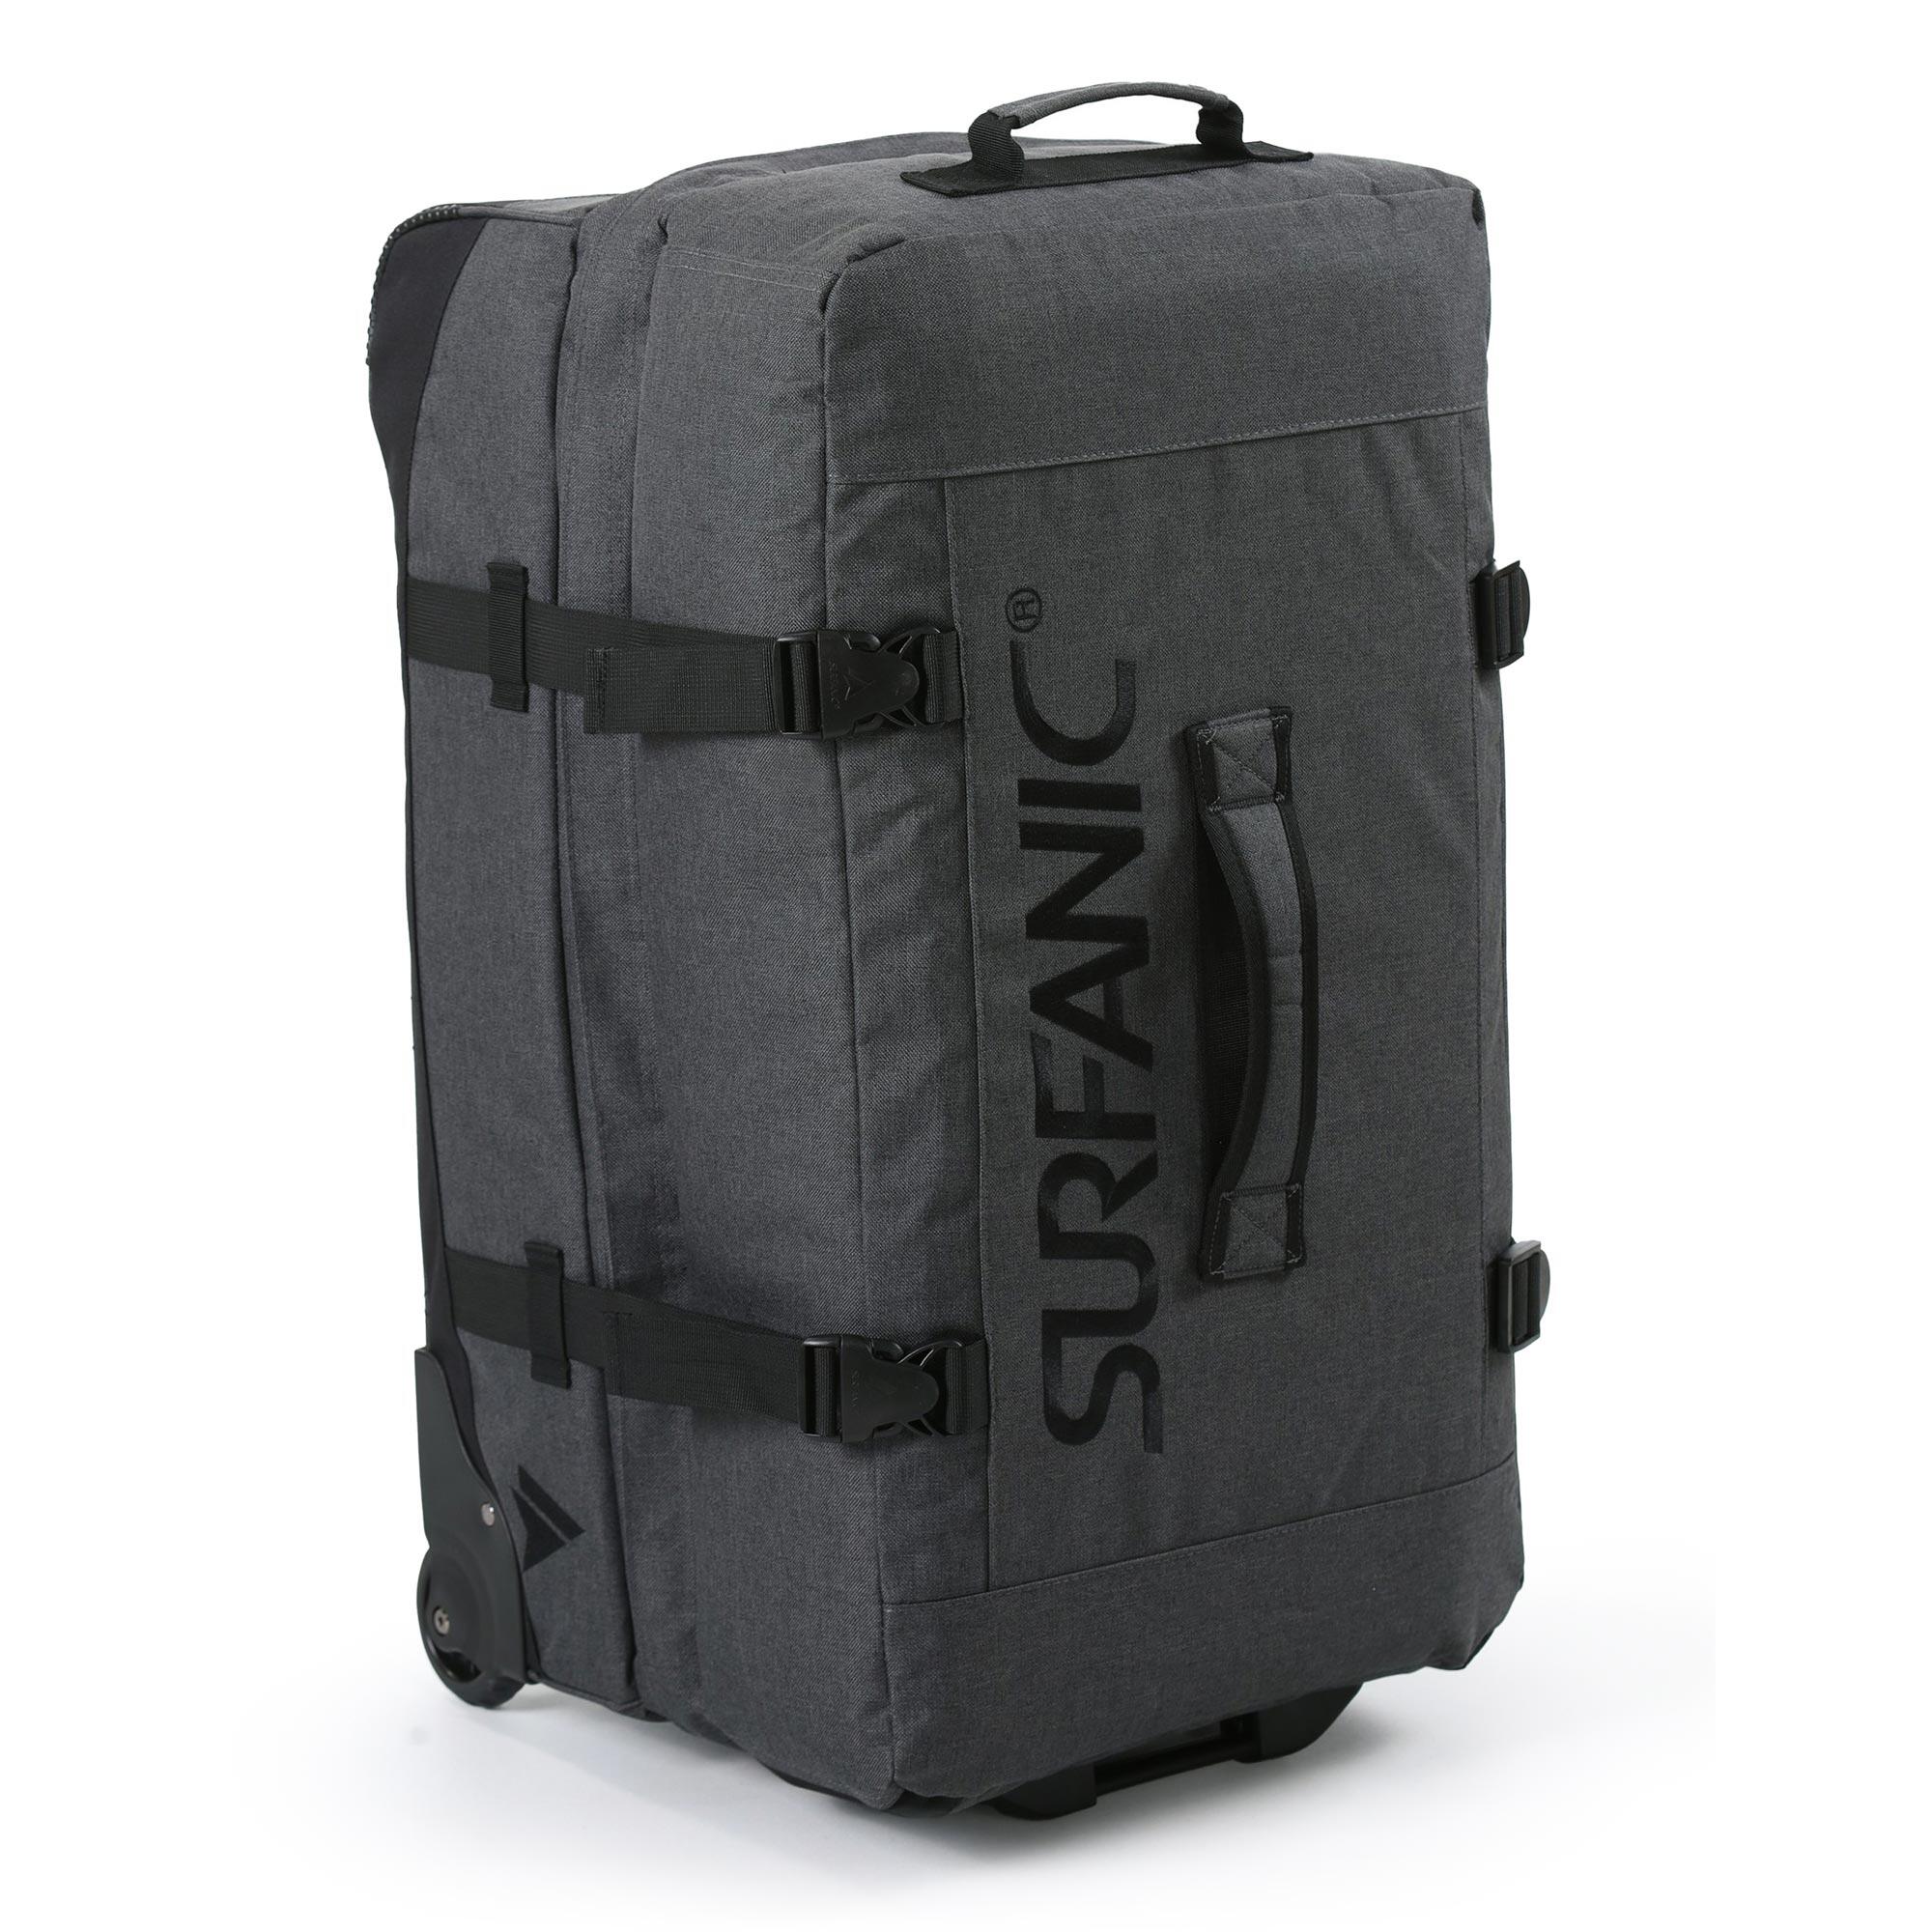 SURFANIC Maxim 2.0 100L Roller Bag Grey